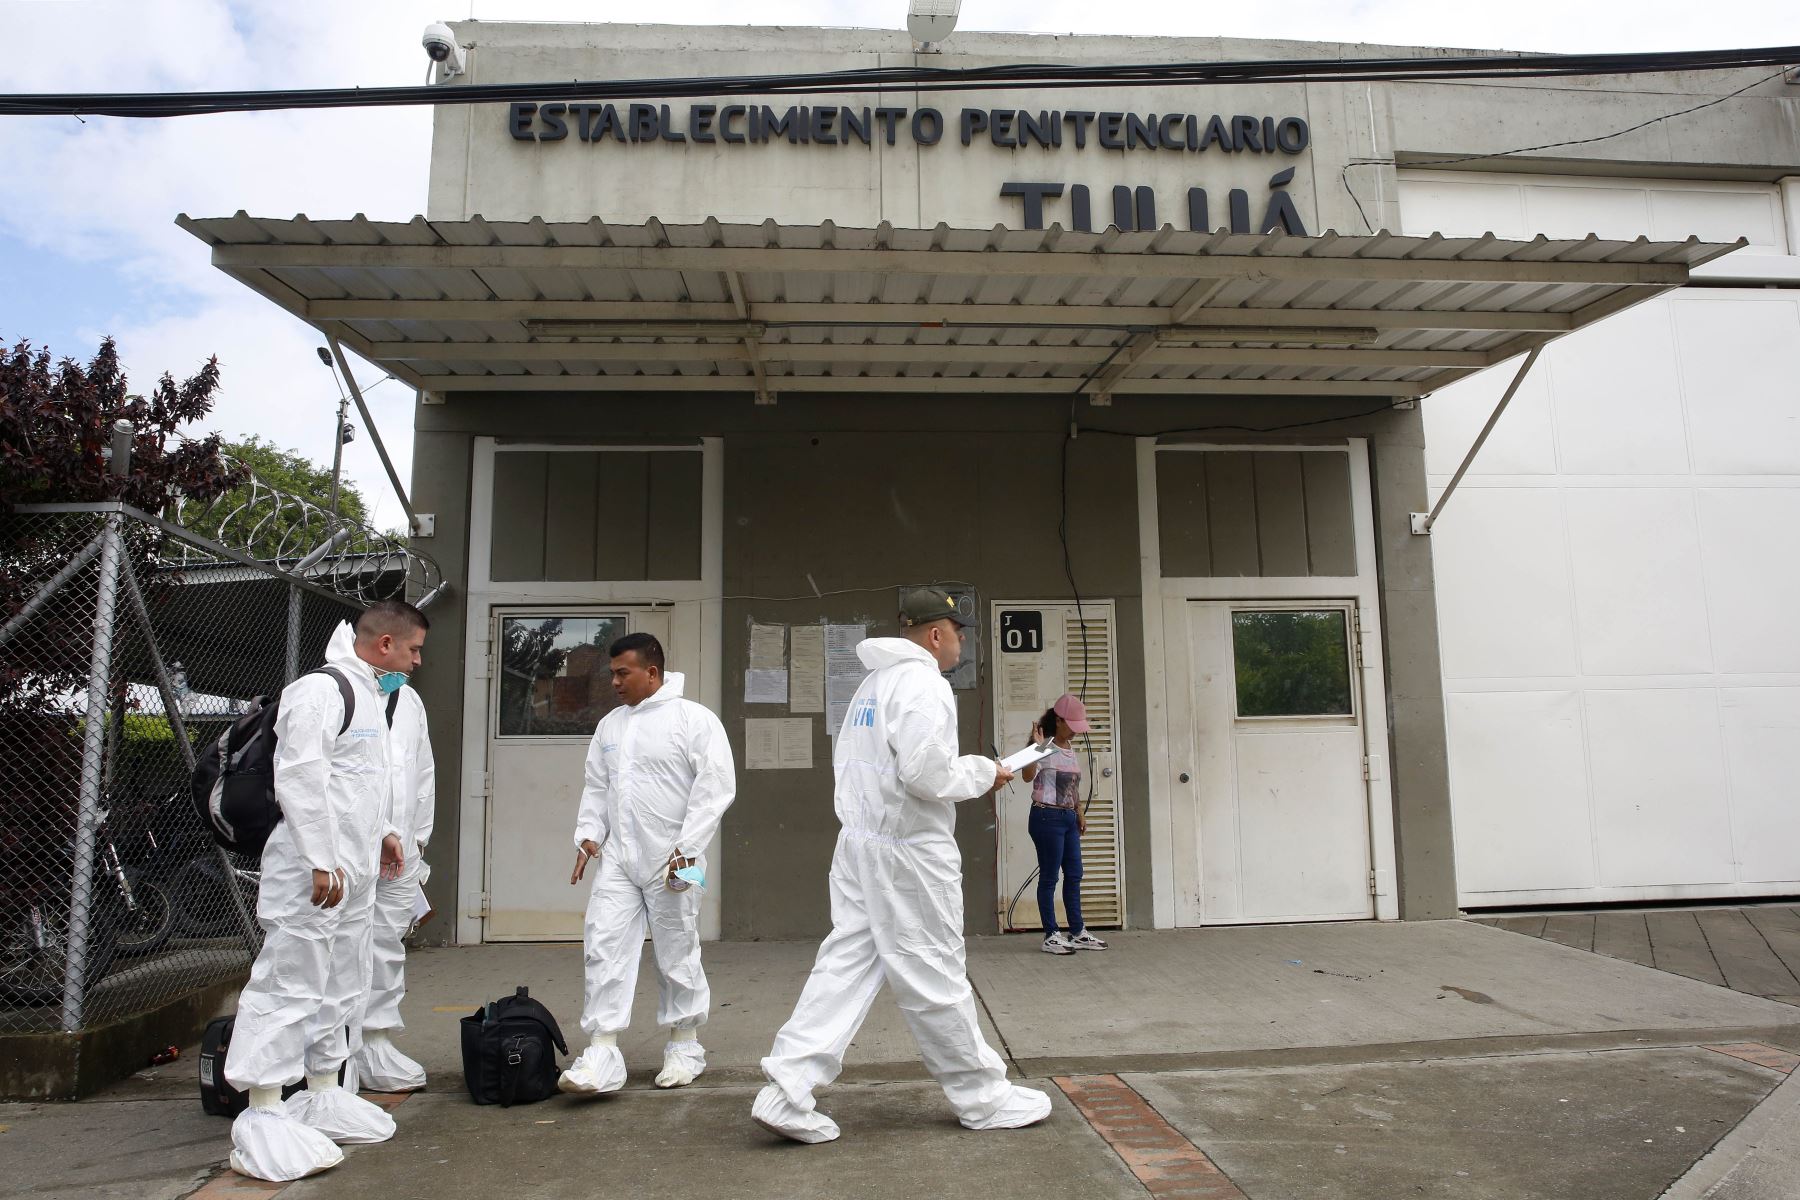 Expertos forenses llegan a la cárcel de Tuluá, hoy en el departamento de Valle del Cauca en Colombia. El número de desaparecidos  ascendió a 51, según información oficial.
Foto: EFE